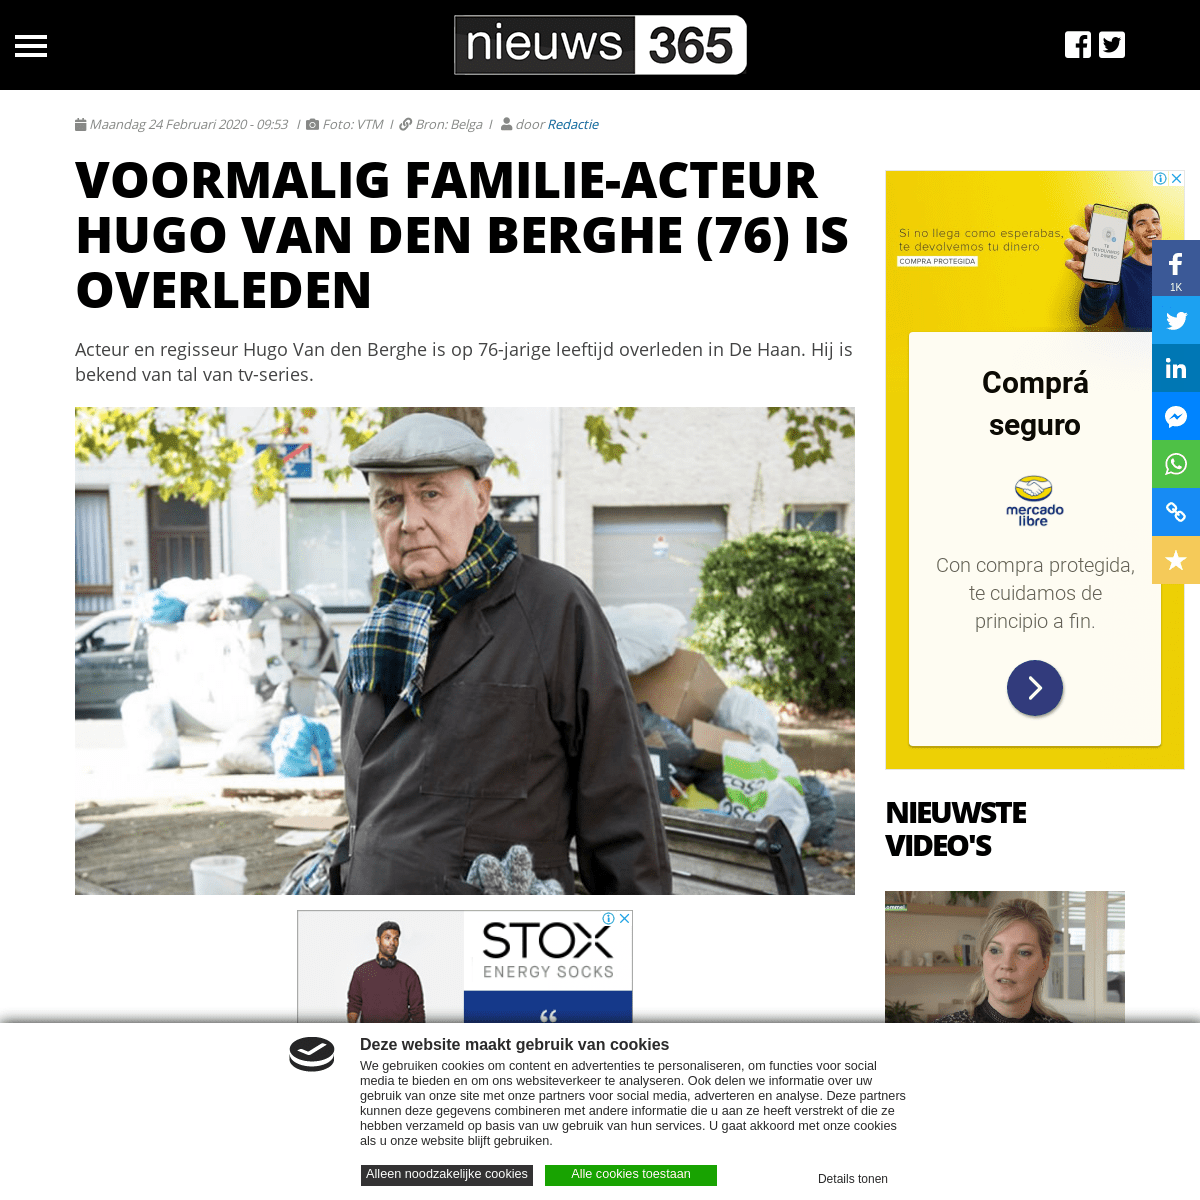 A complete backup of nieuws365.be/news/voormalig-familie-acteur-hugo-van-den-berghe-76-is-overleden